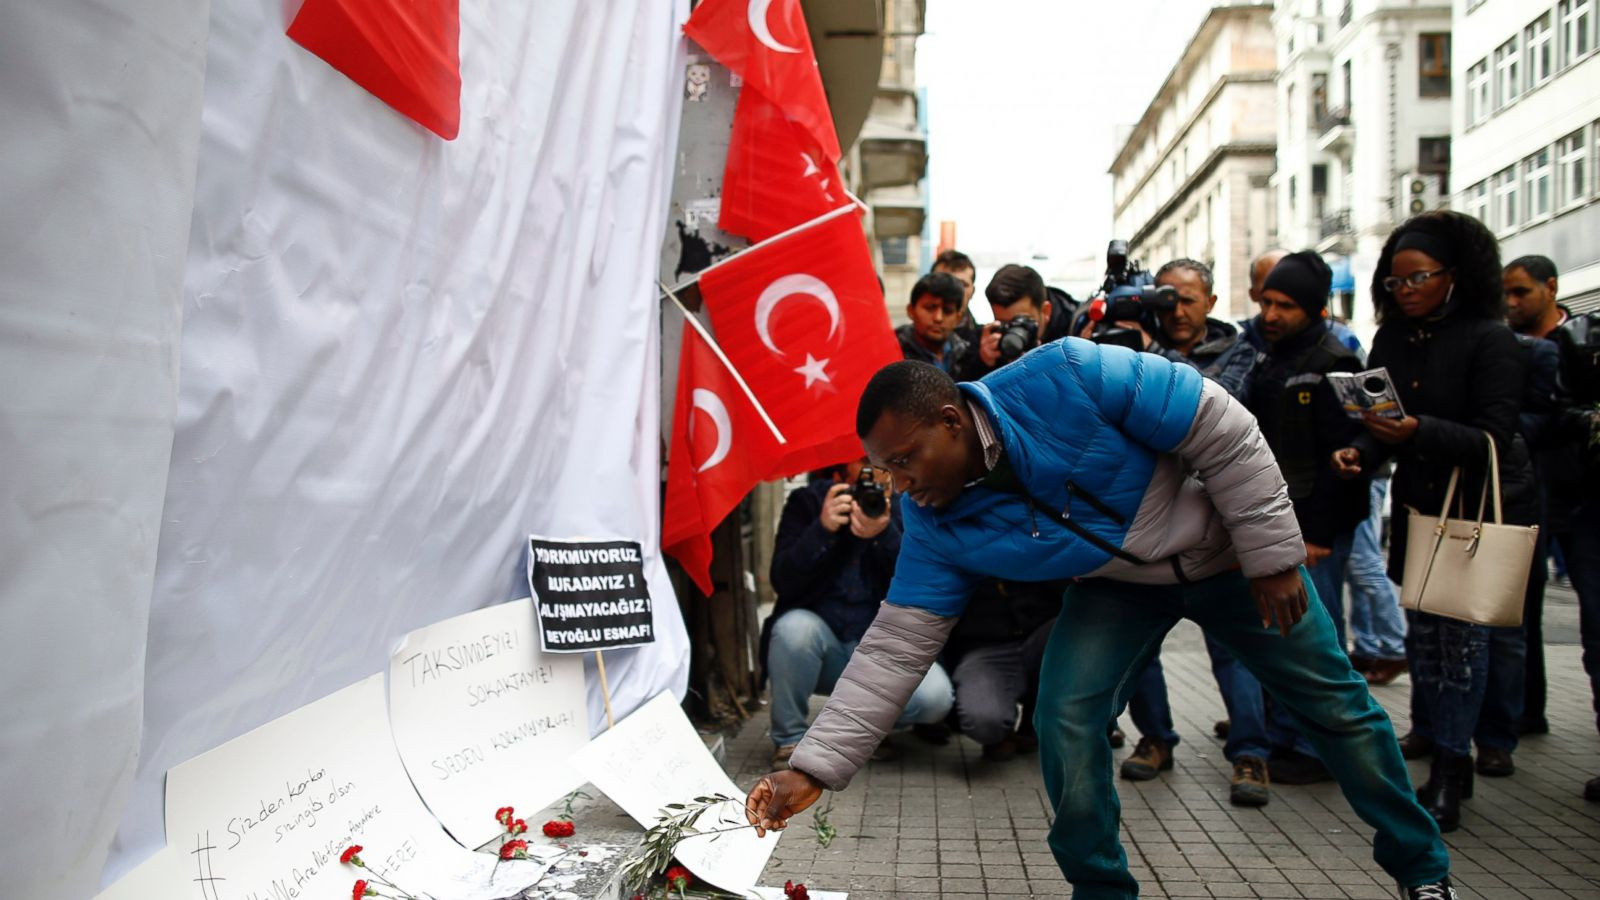 Tổng thống Erdogan: Ankara sẽ đập tan IS